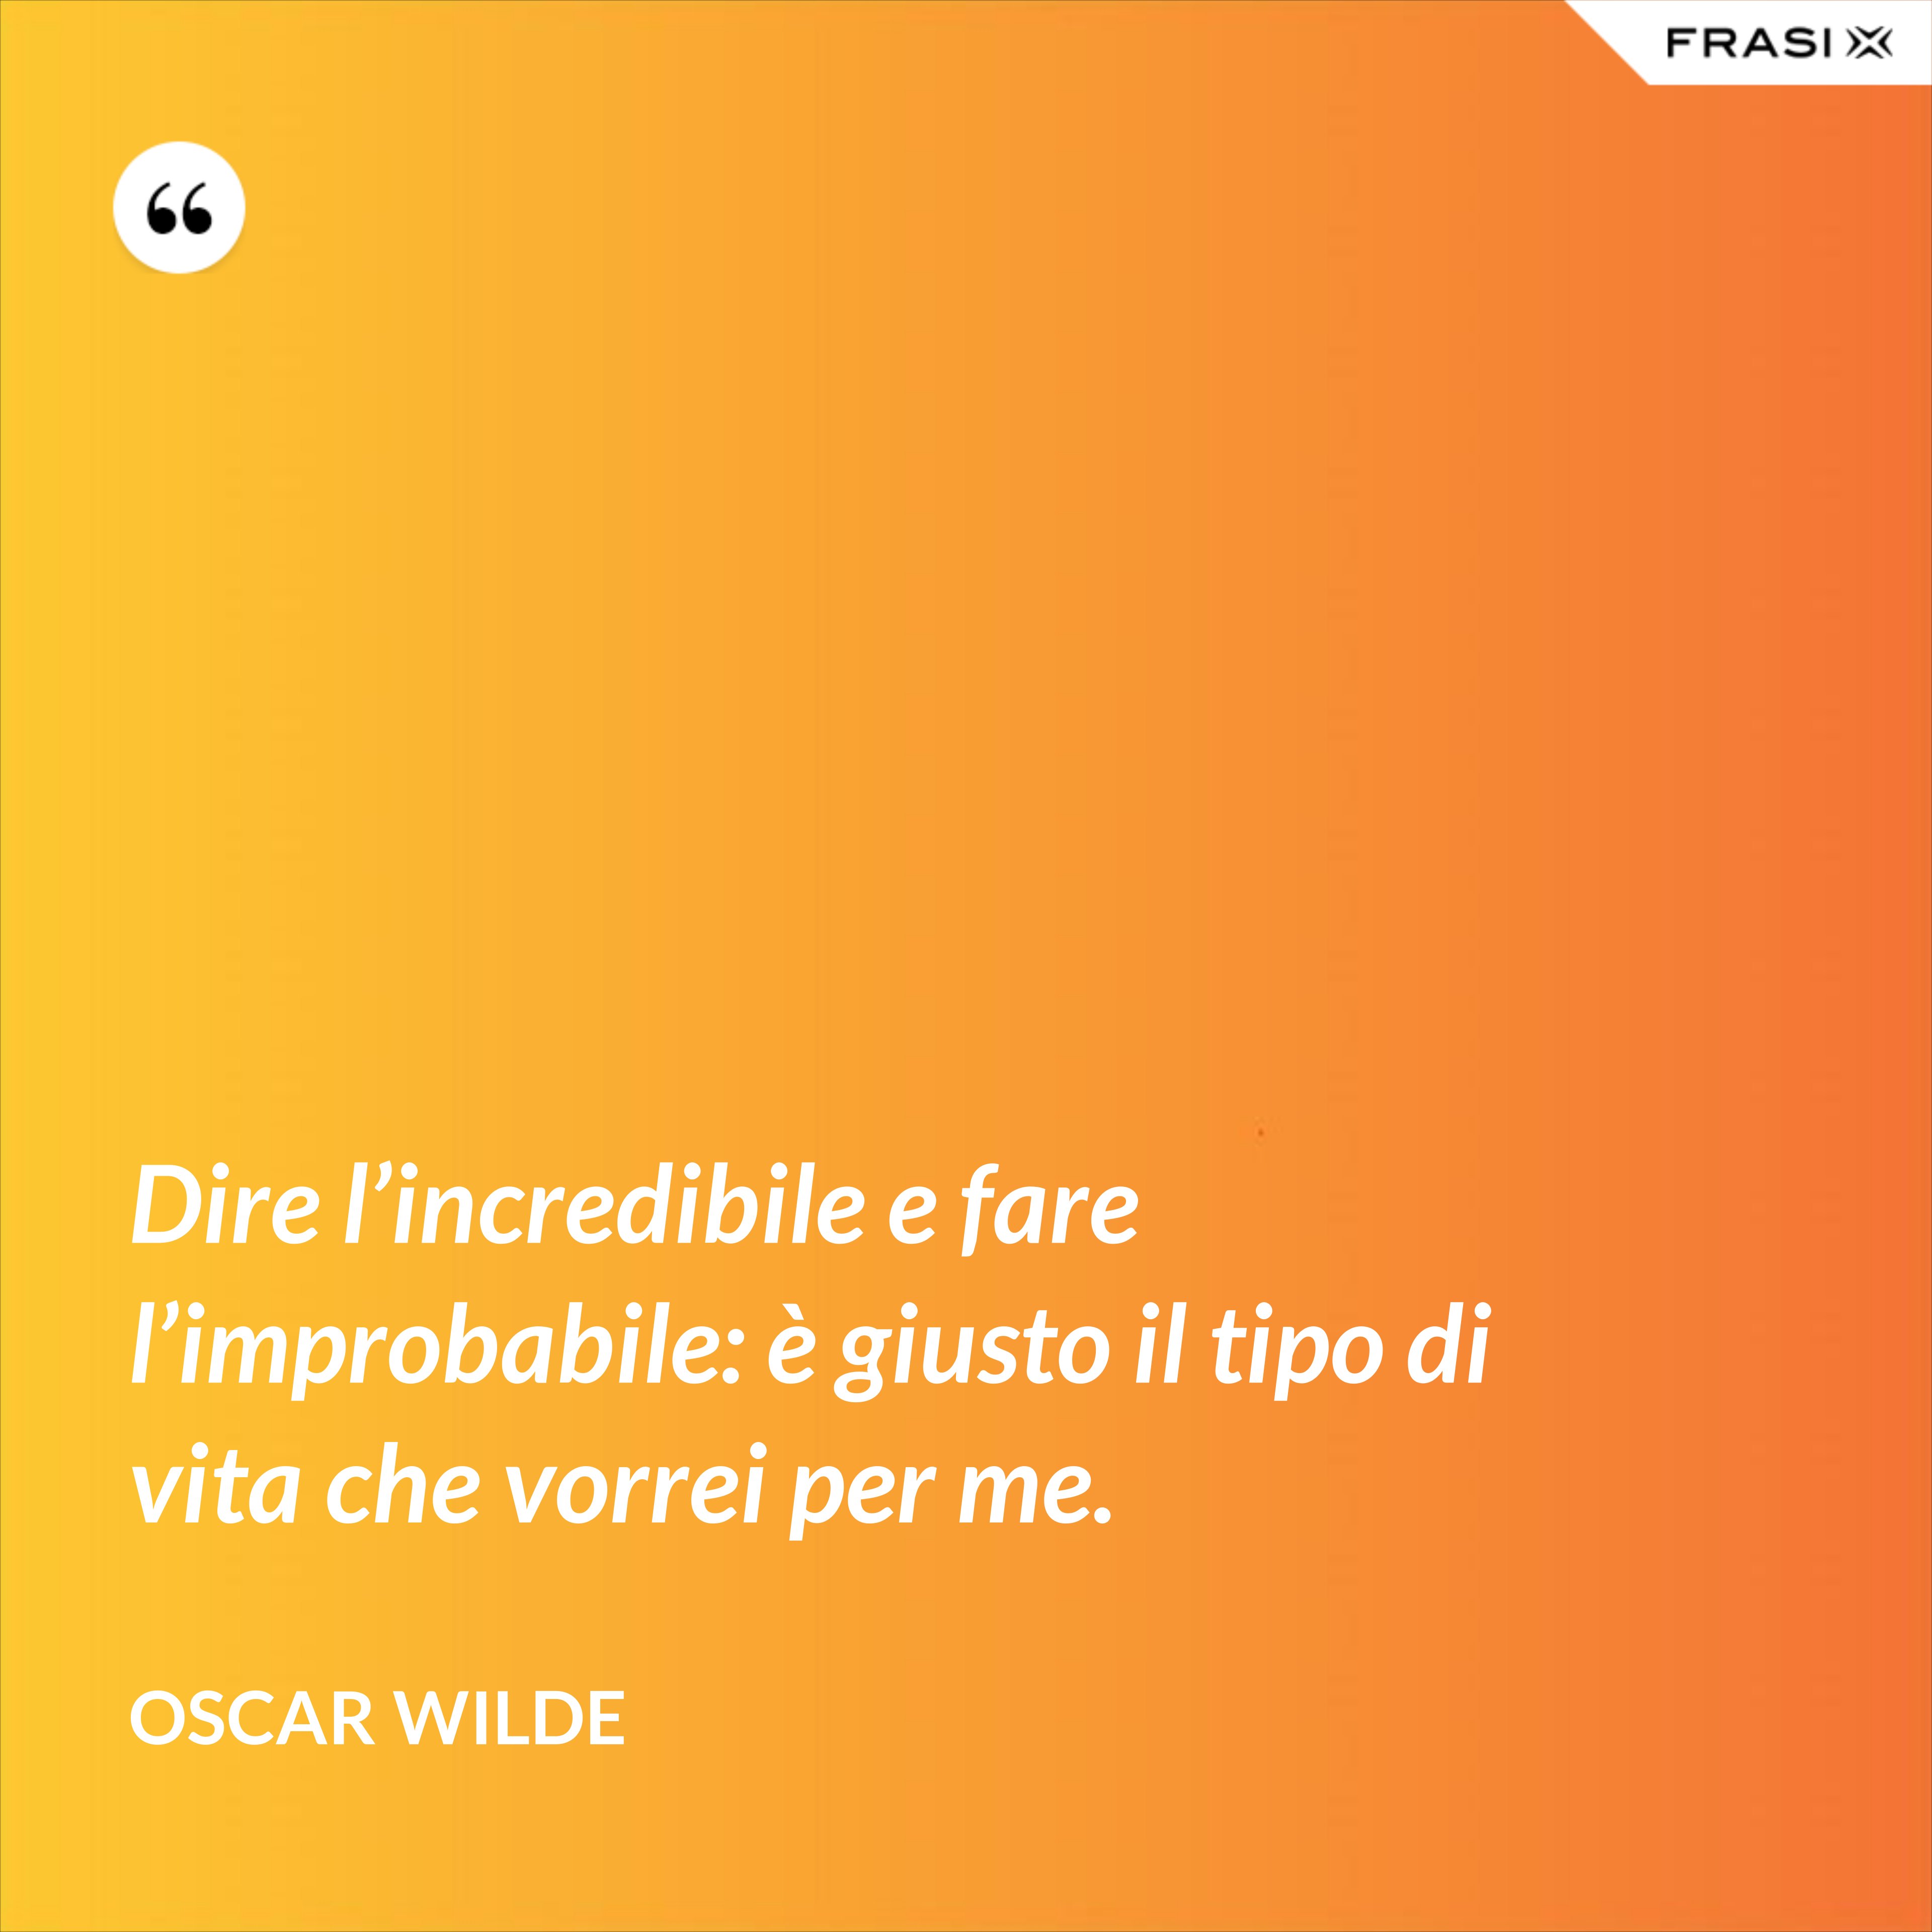 Dire l’incredibile e fare l’improbabile: è giusto il tipo di vita che vorrei per me. - Oscar Wilde